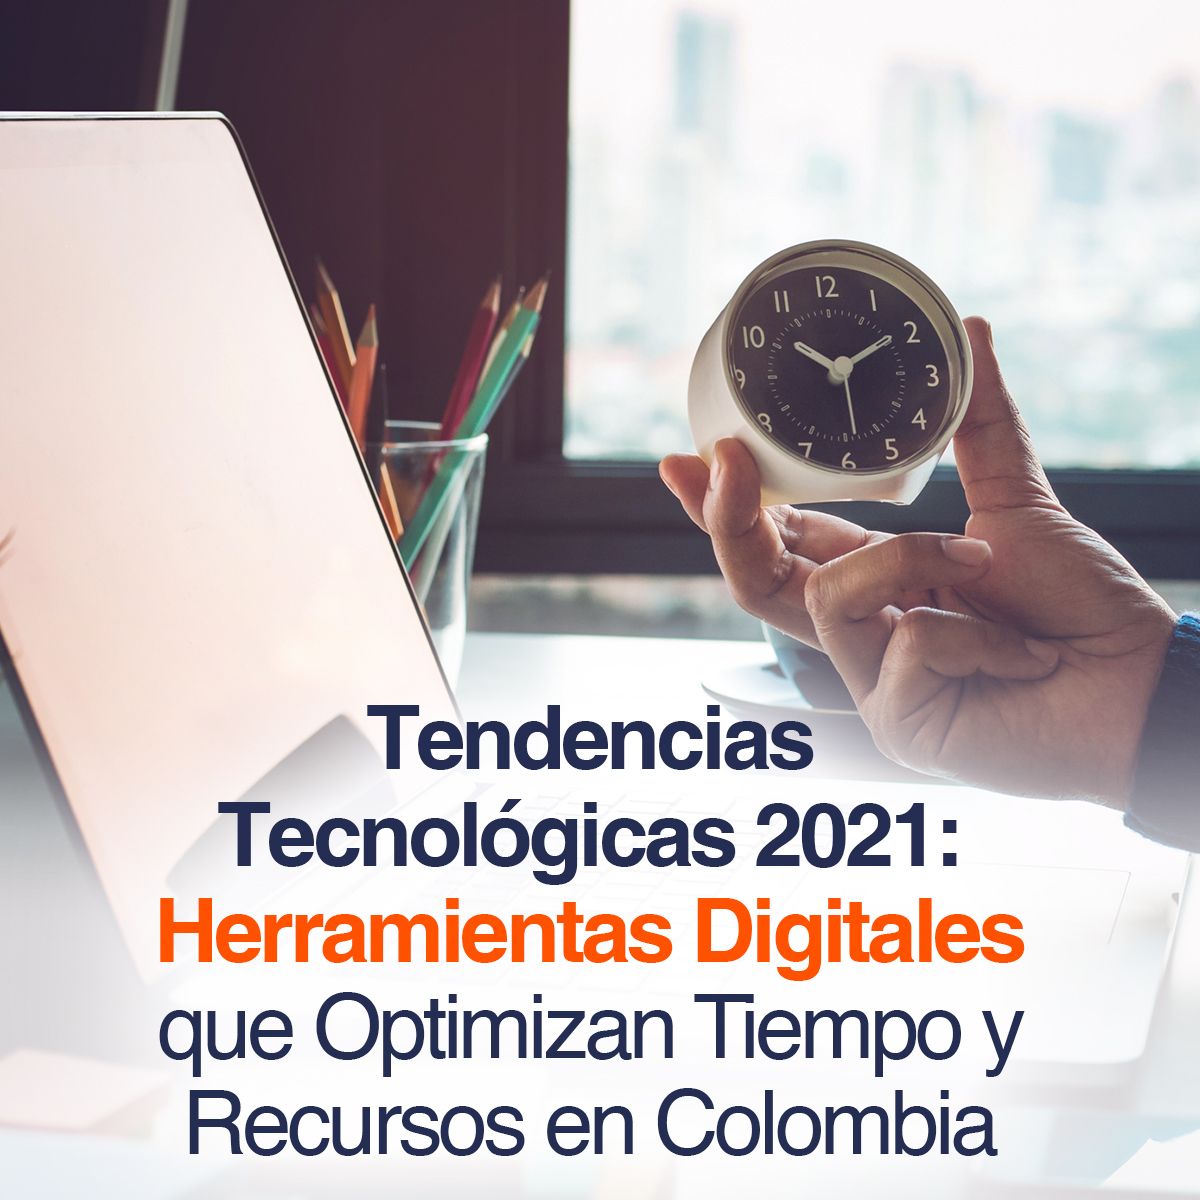 Tendencias Tecnológicas 2021: Herramientas Digitales que Optimizan Tiempo y Recursos en Colombia